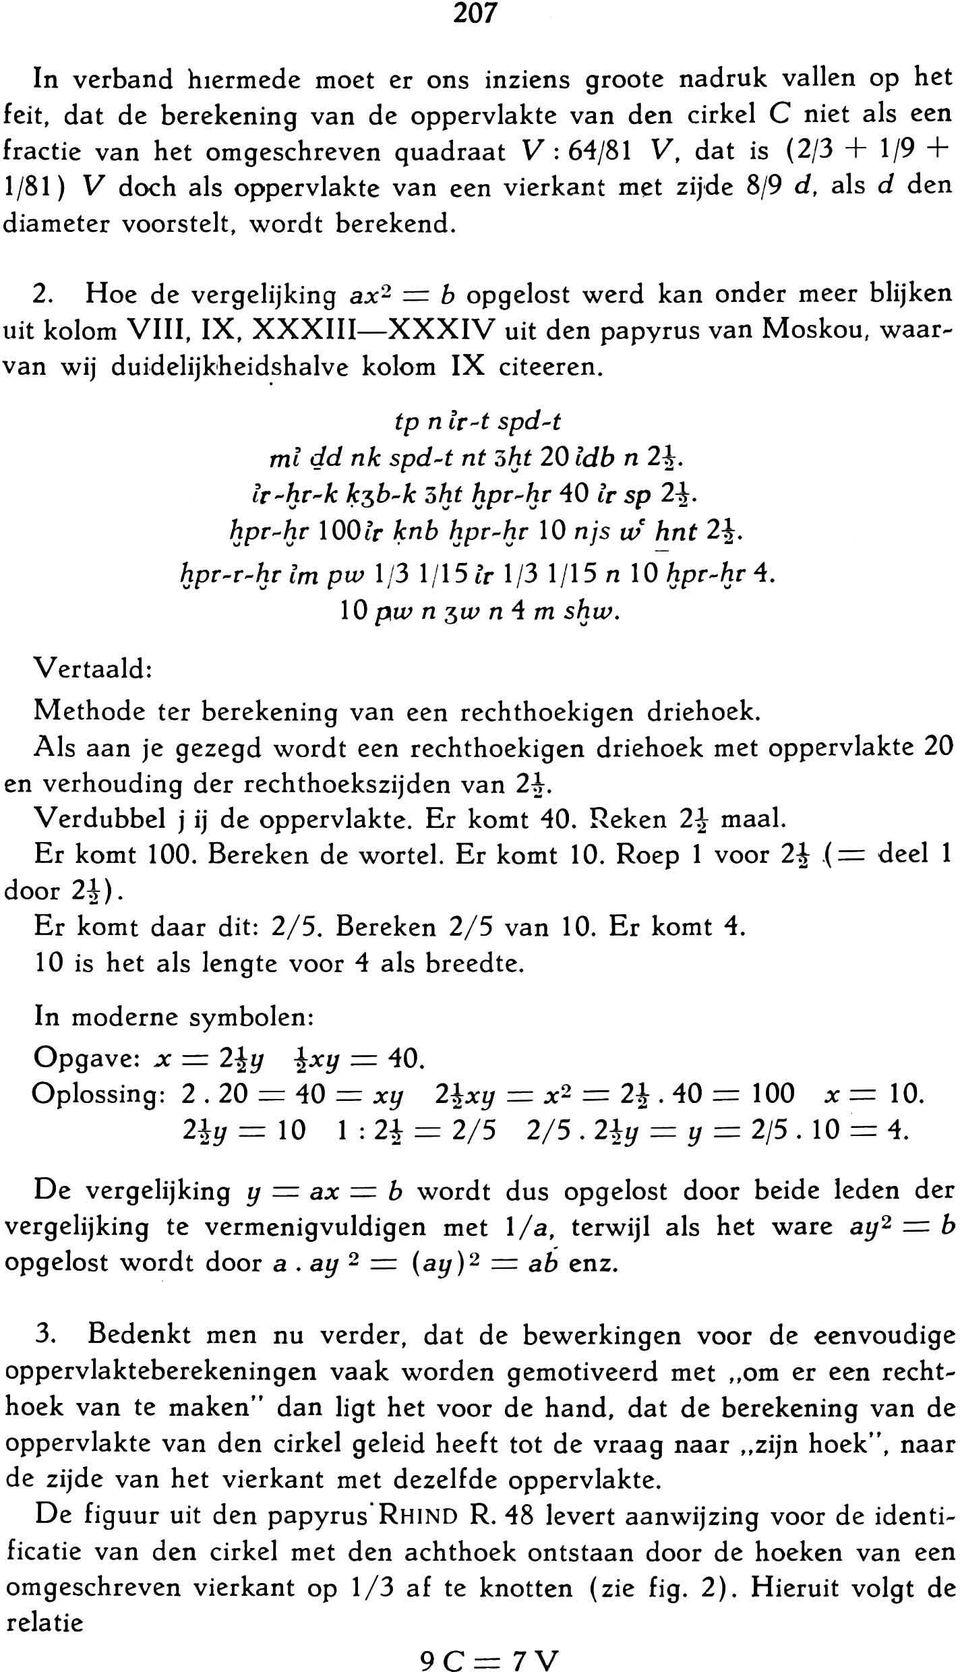 Hoe de vergelijking ax2 = b opgelost werd kan onder meer blijken uit kolom VIII, IX, XXXIII-XXXIV uit den papyrus van Moskou, waar~ van wij duidelijkheid.shalve kolom IX citeeren.